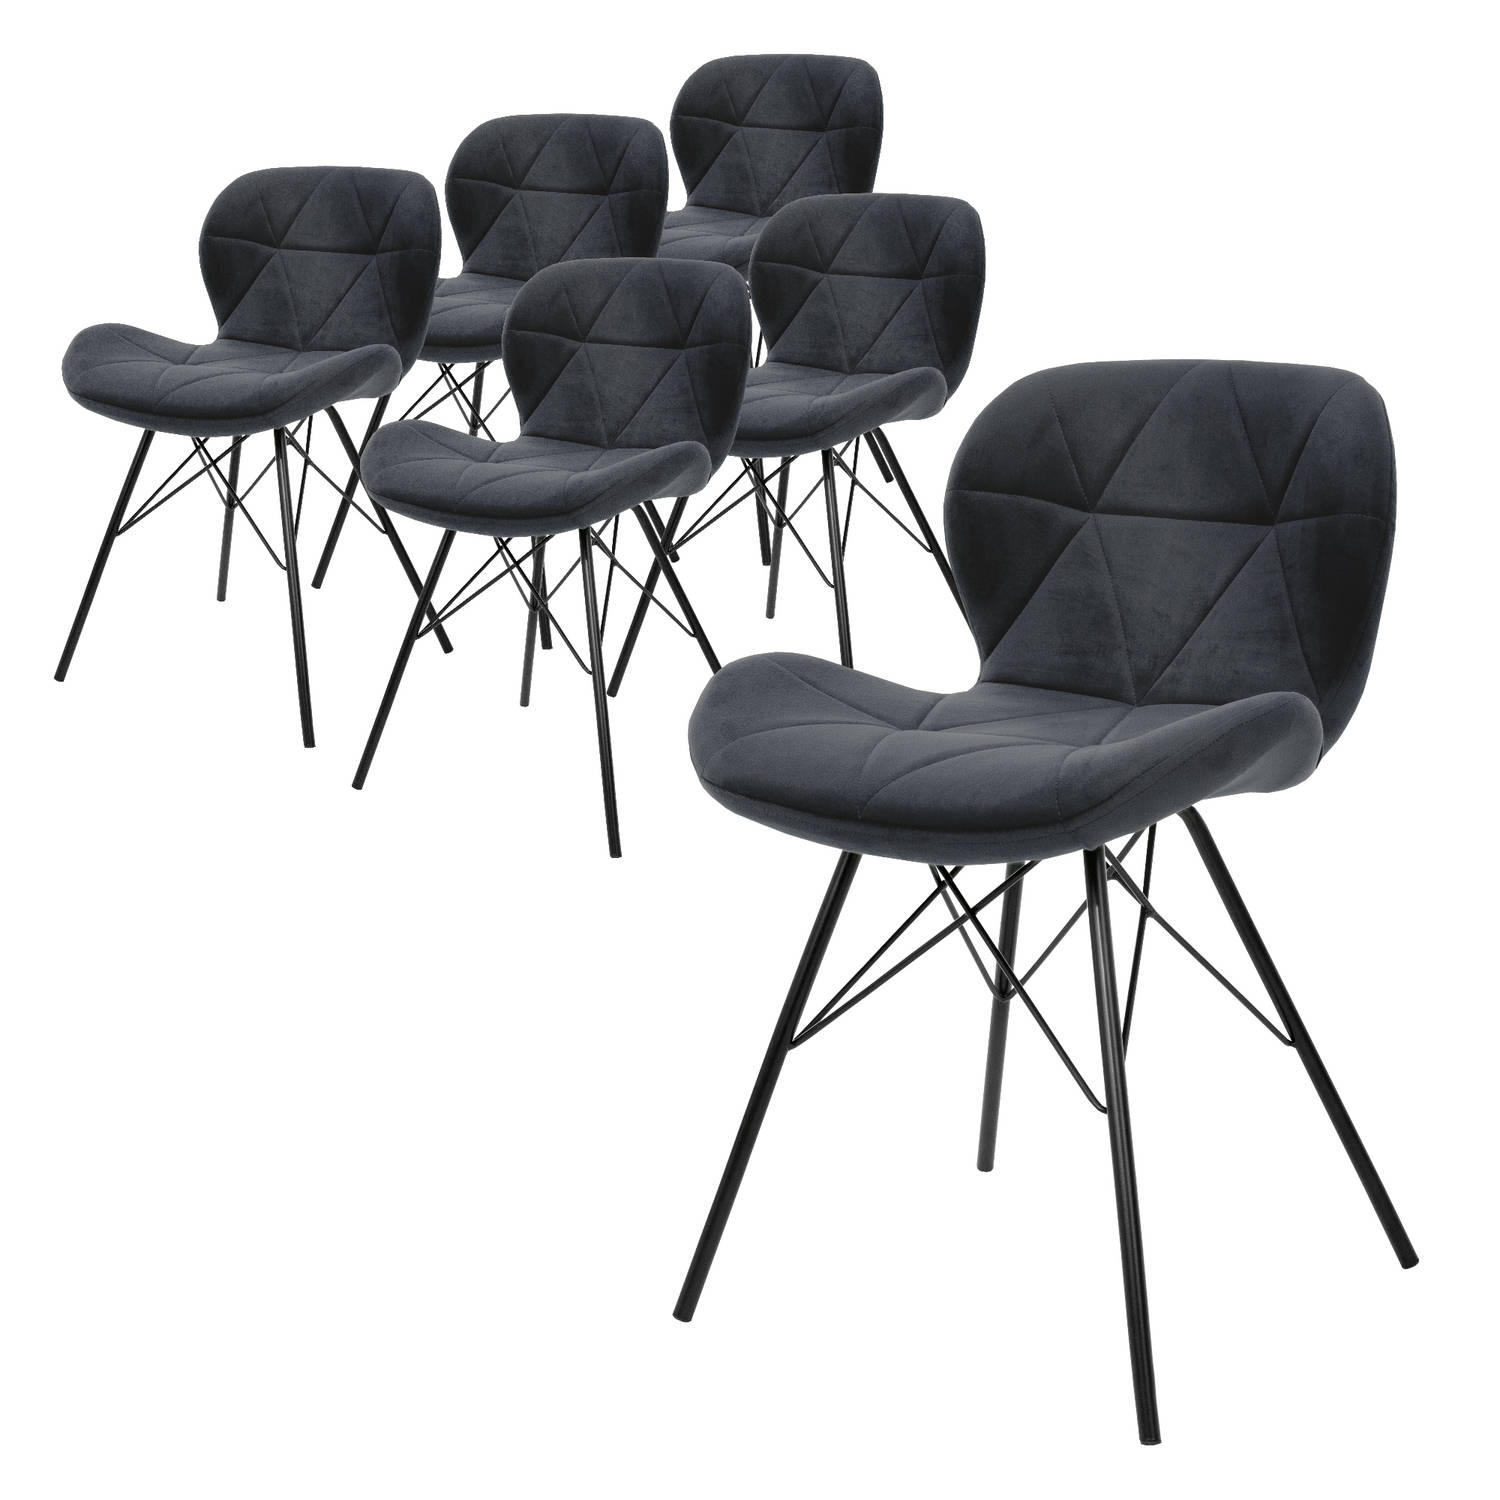 ML-Design set van 6 eetkamerstoelen met rugleuning, antraciet, keukenstoel met fluwelen bekleding, gestoffeerde stoel